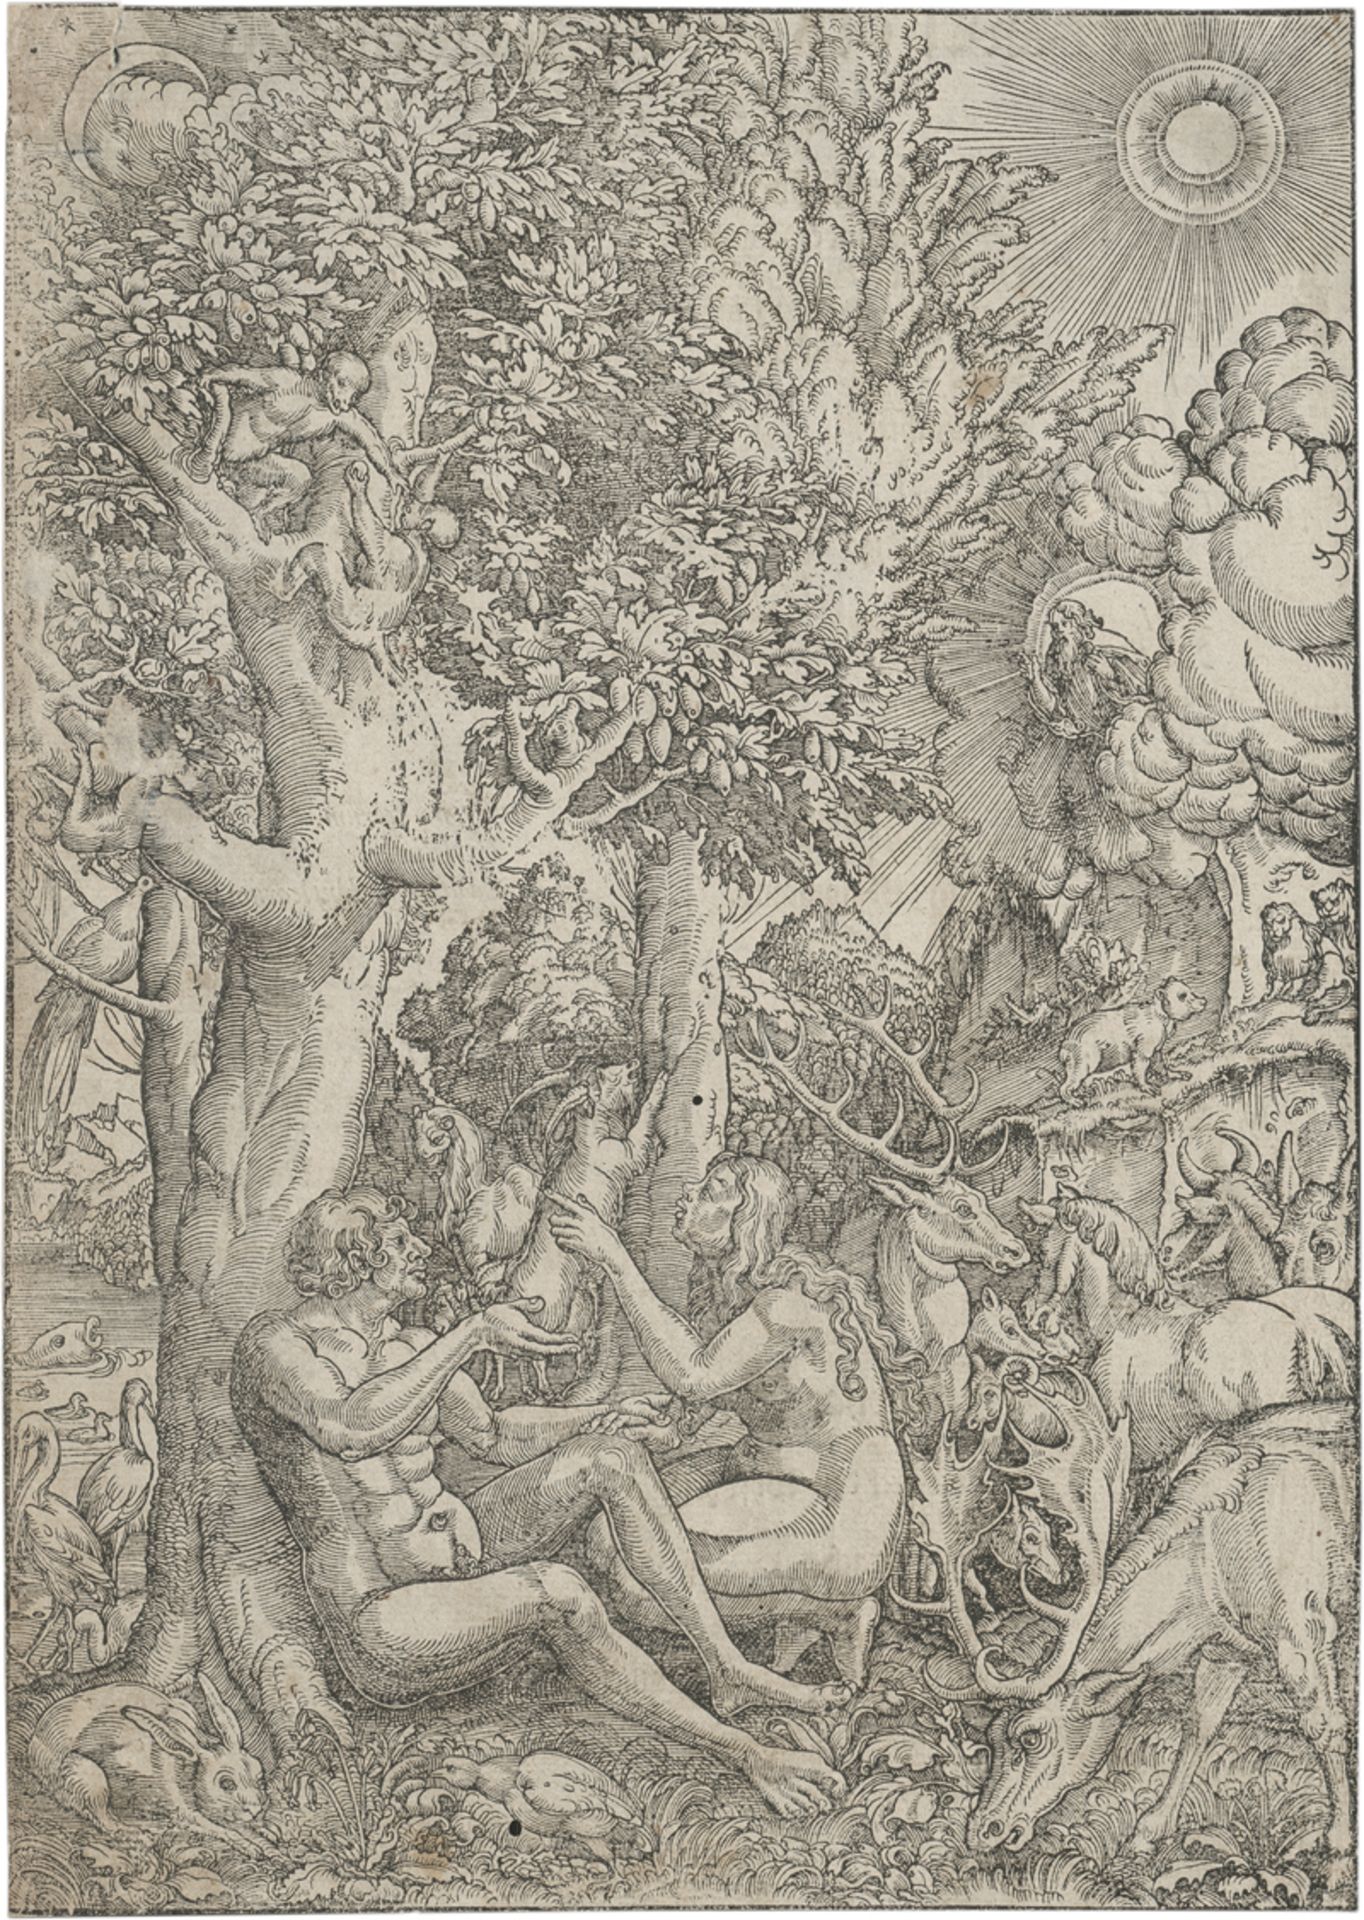 Altdorfer, Erhard: Adam und Eva im Garten Eden